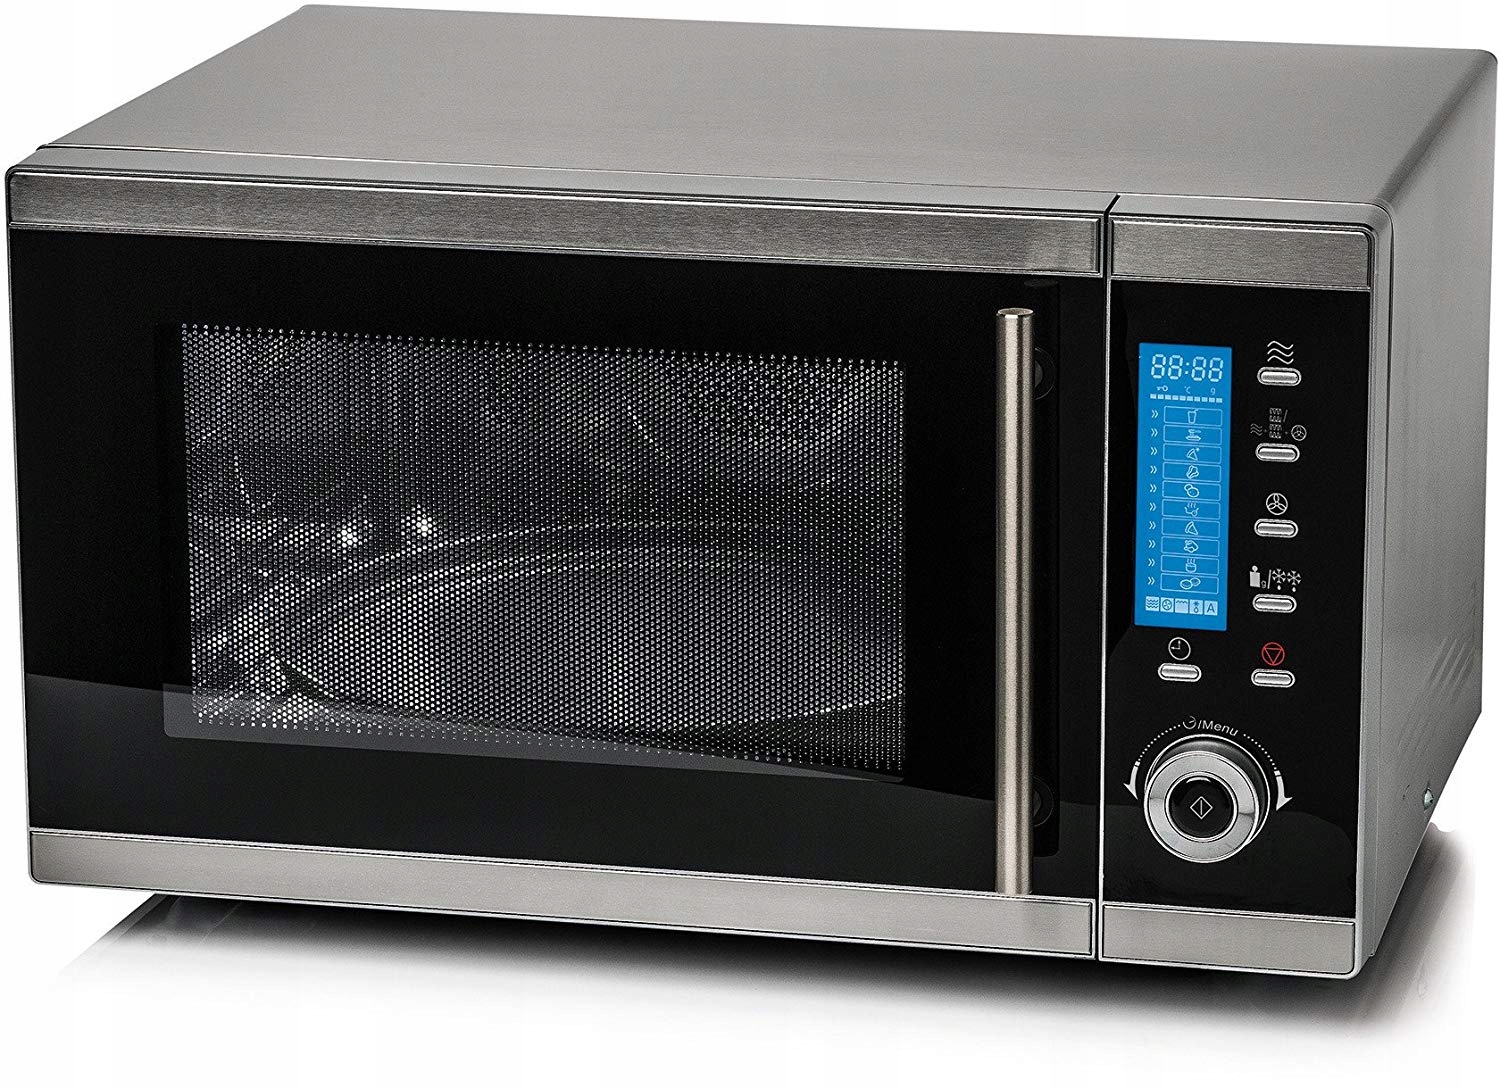 Комбинированные свч. Микроволновая печь Microwave Oven. Saro 900вт СВЧ микроволновка. Микроволновая печь Медион с грилем. Simfer микроволновая печь.